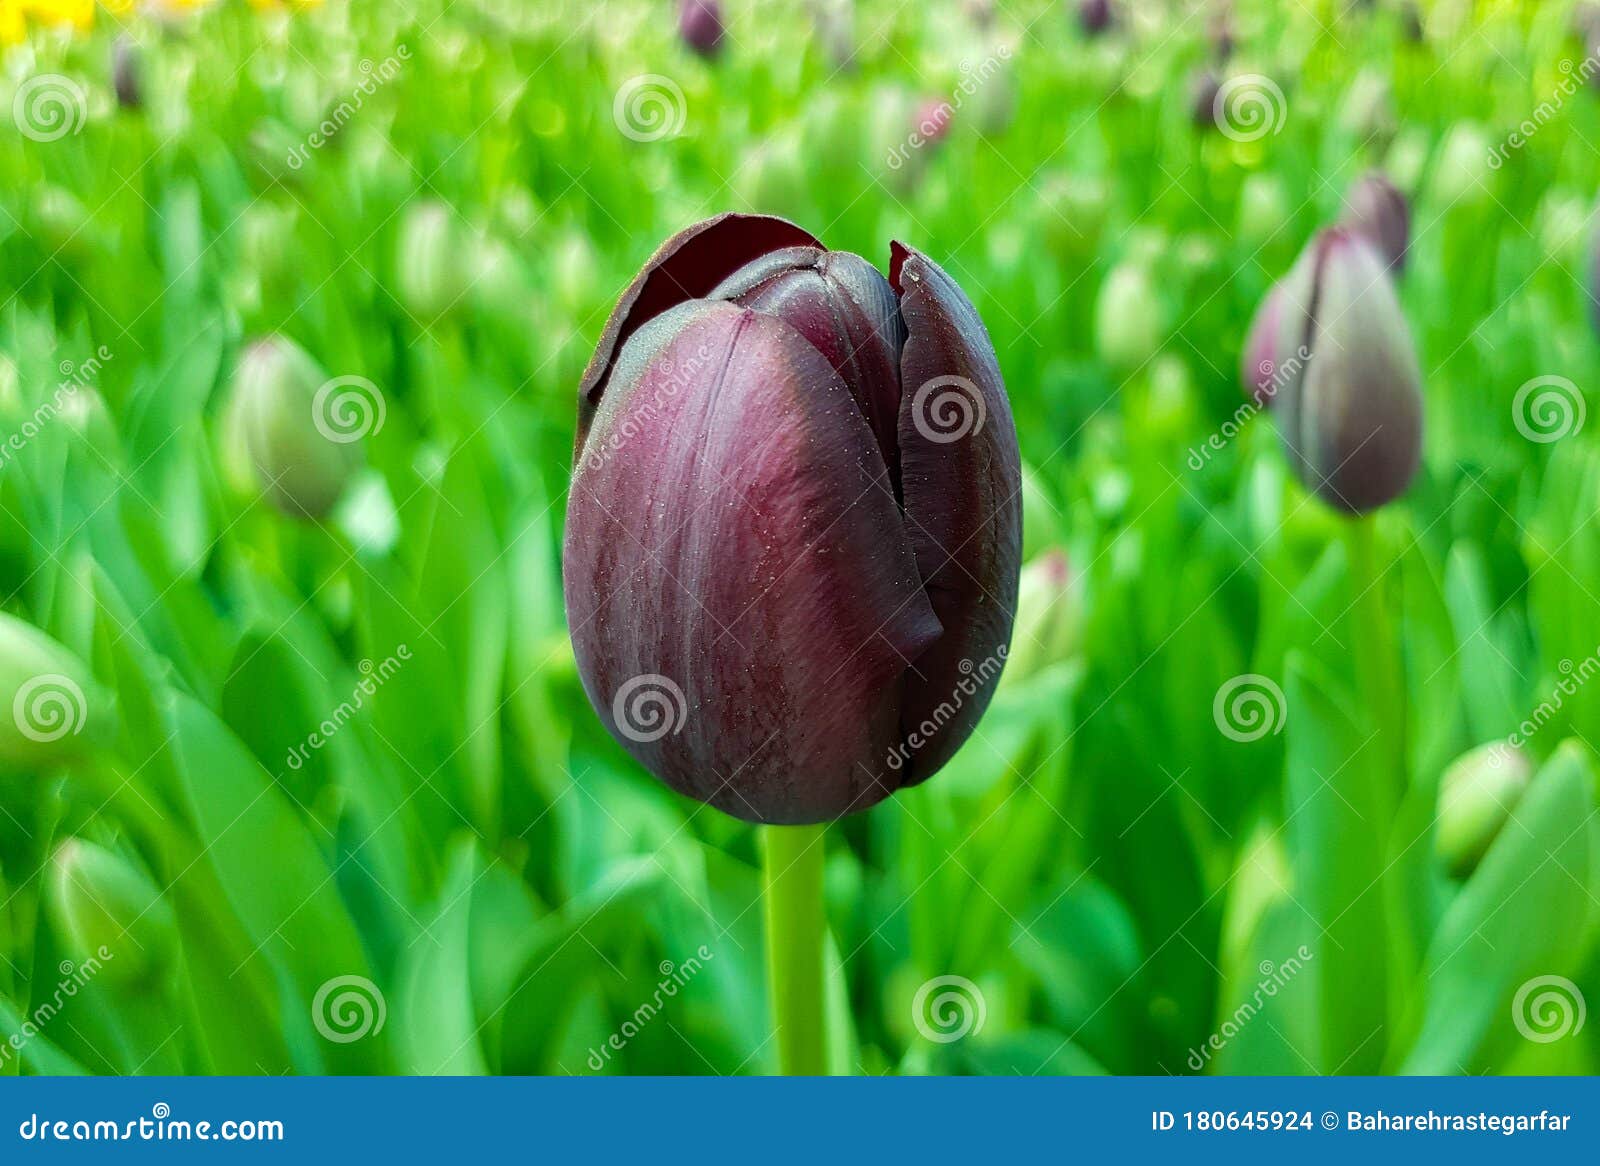 Reina del tulipán nocturno foto de archivo. Imagen de hoja - 180645924